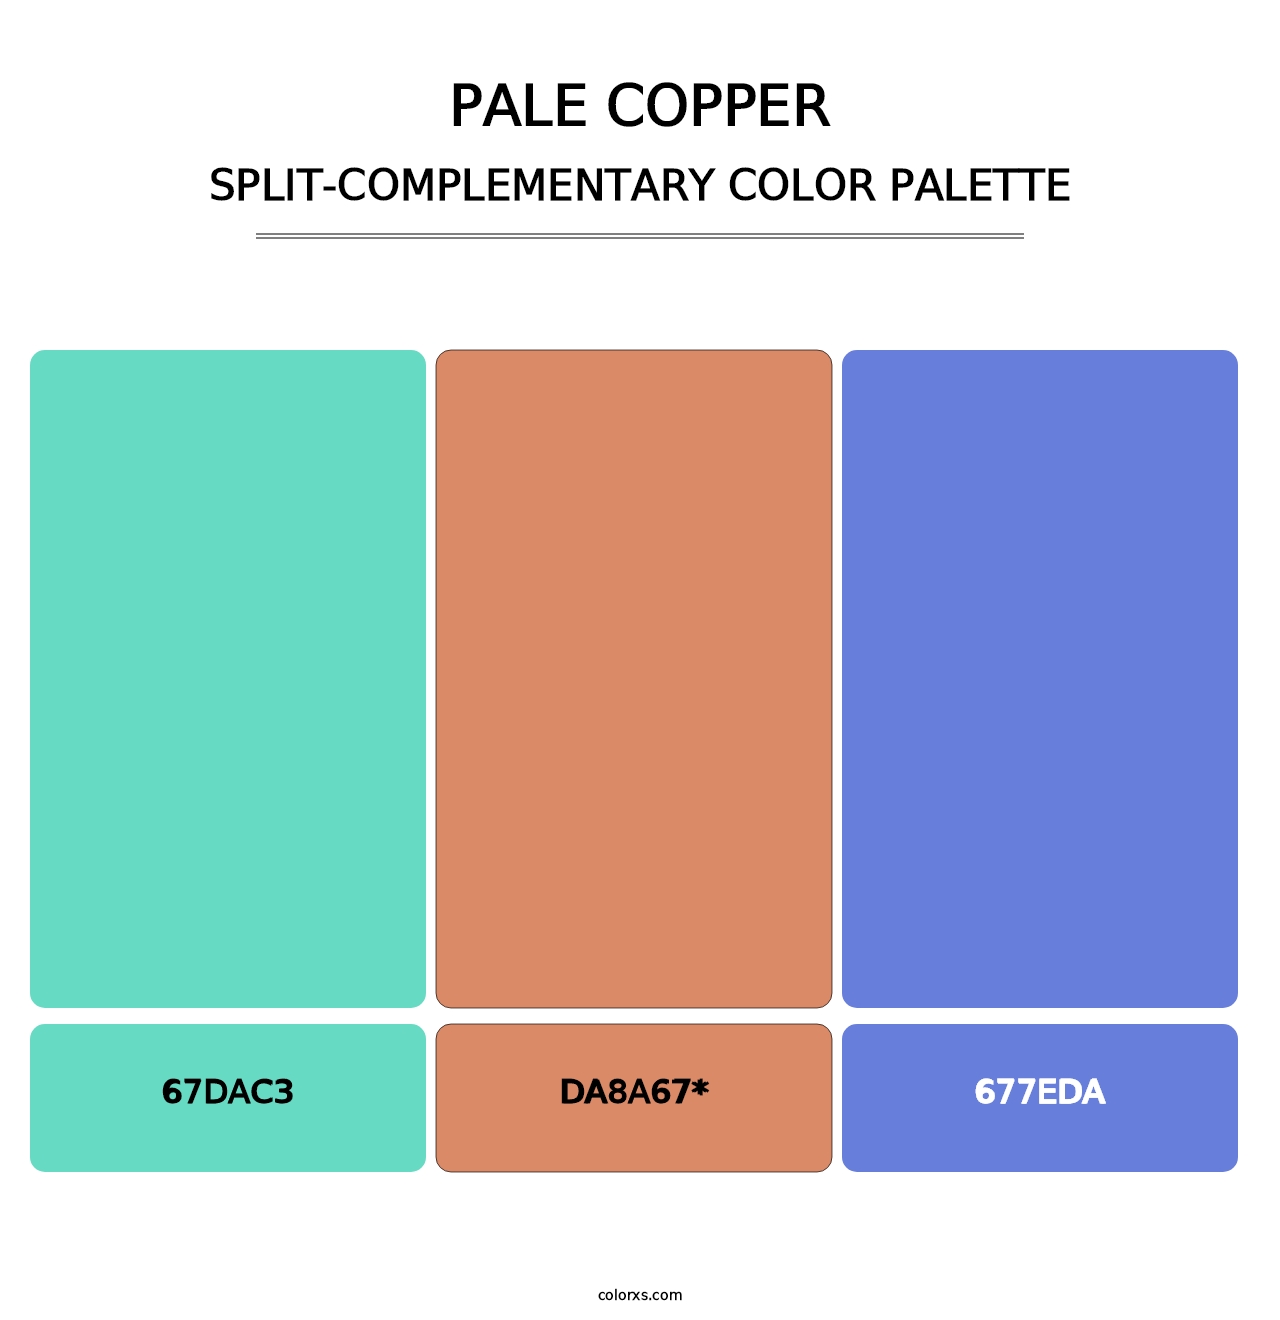 Pale Copper - Split-Complementary Color Palette